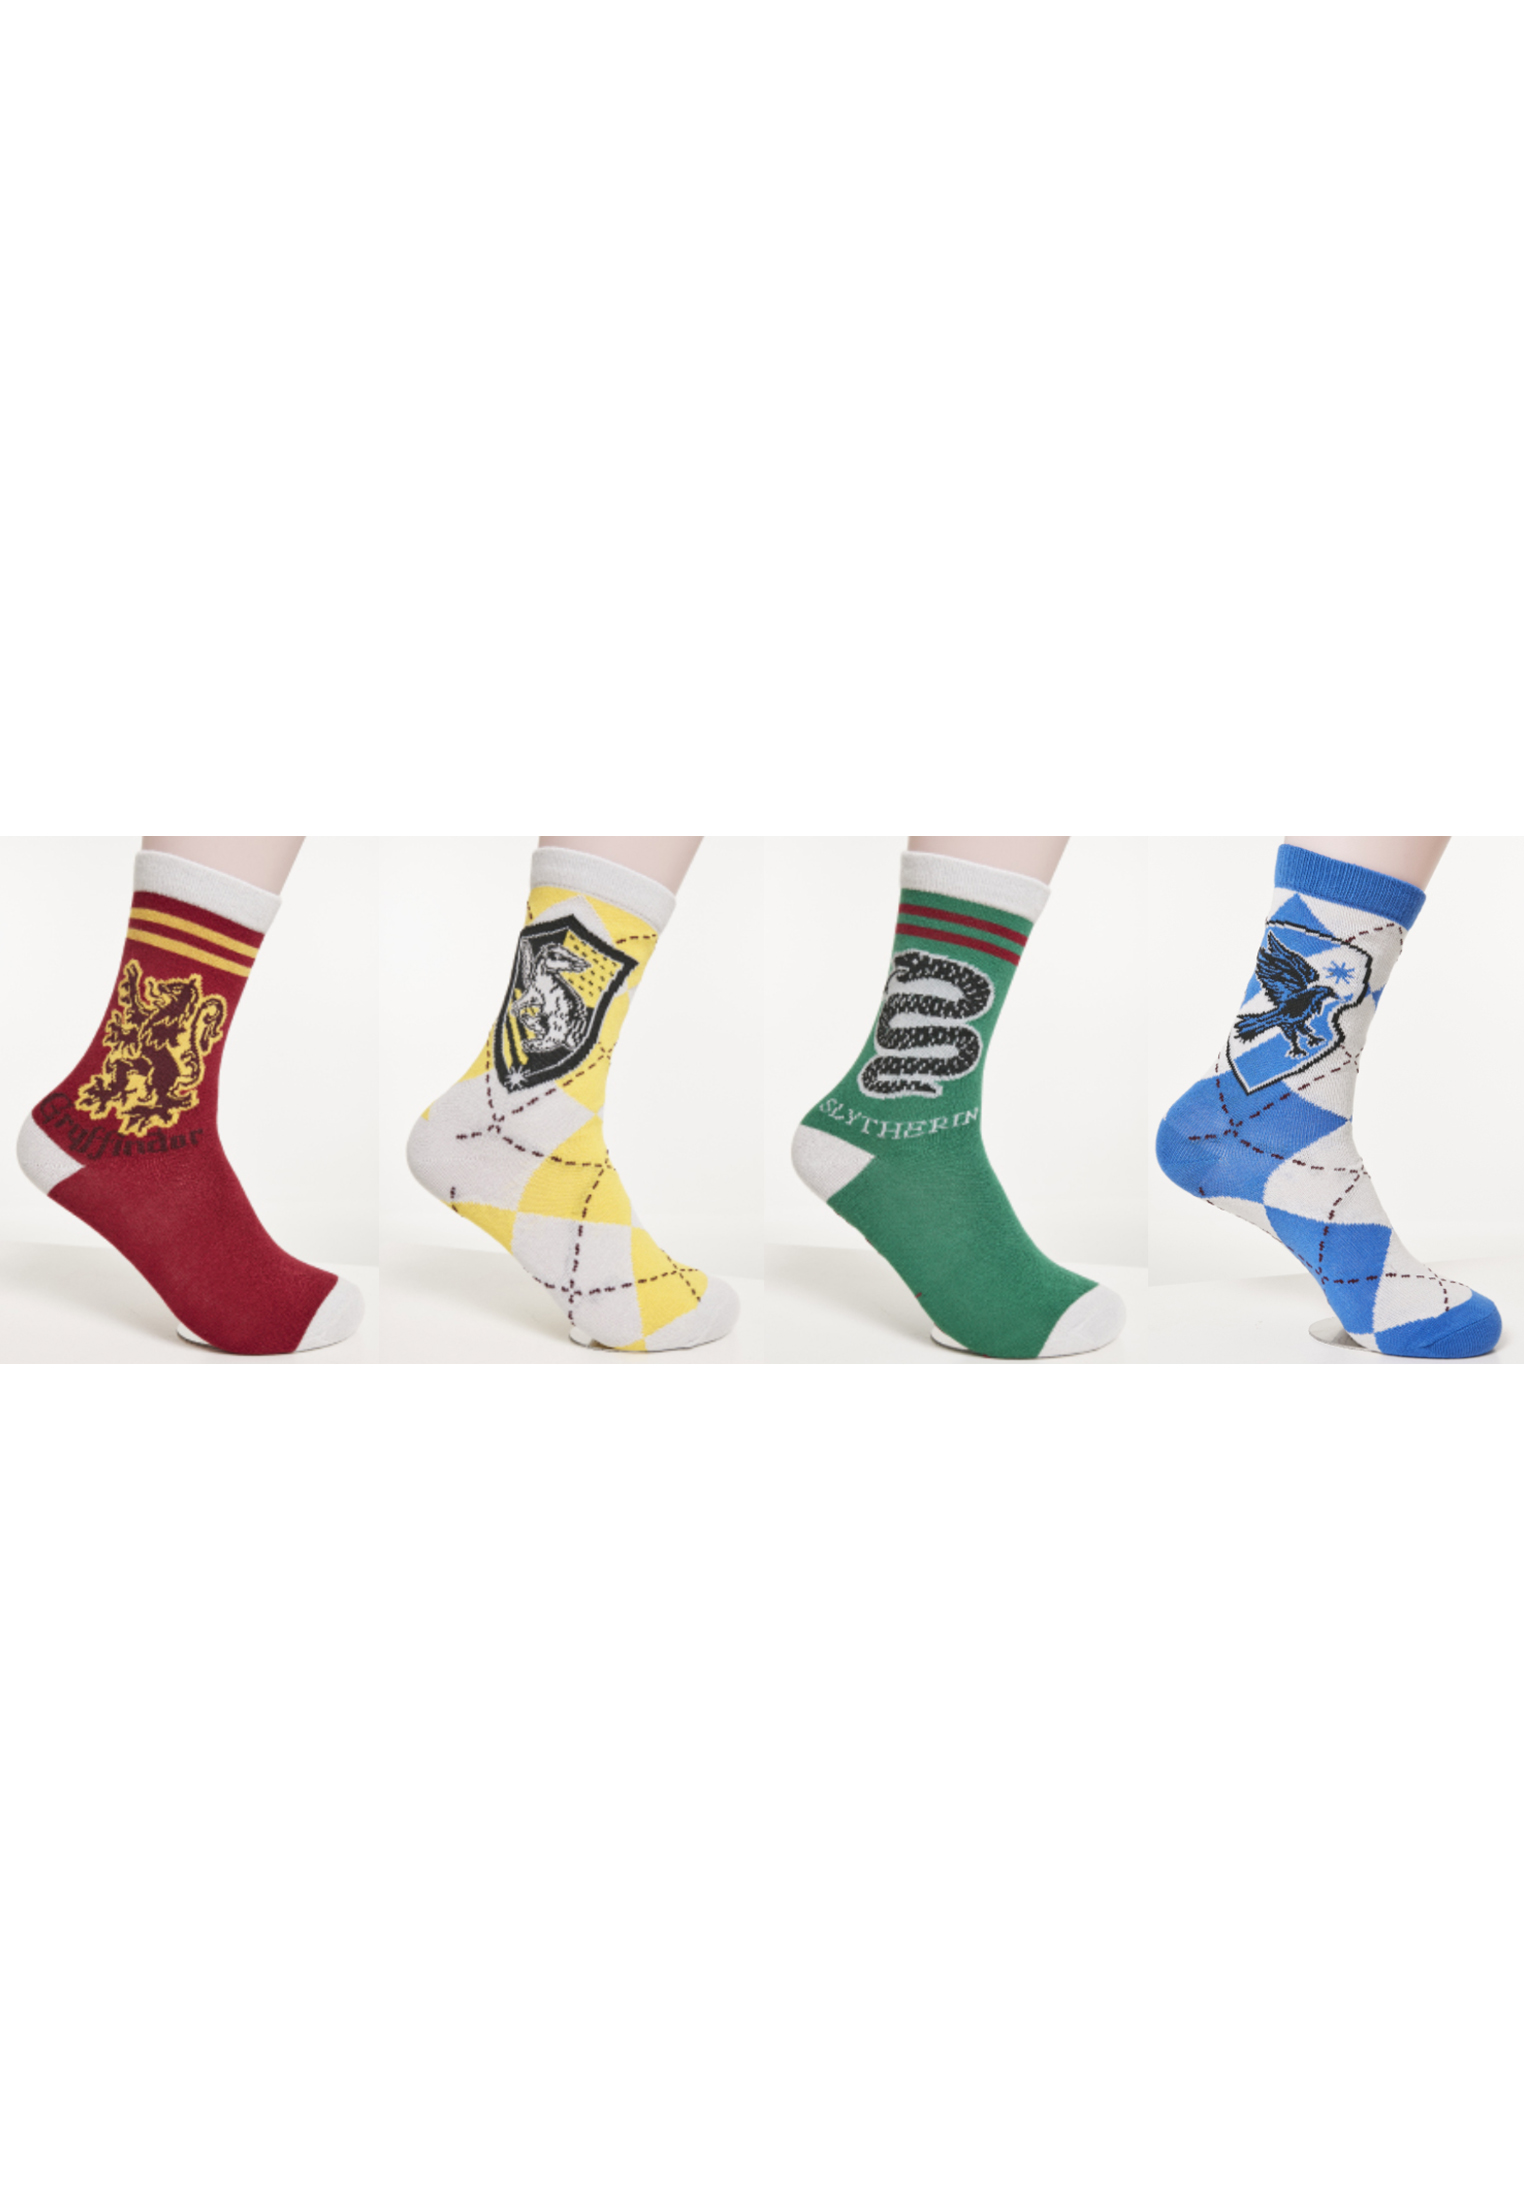 Socken Harry Potter Team Socks 4-Pack in Farbe white/black/blue